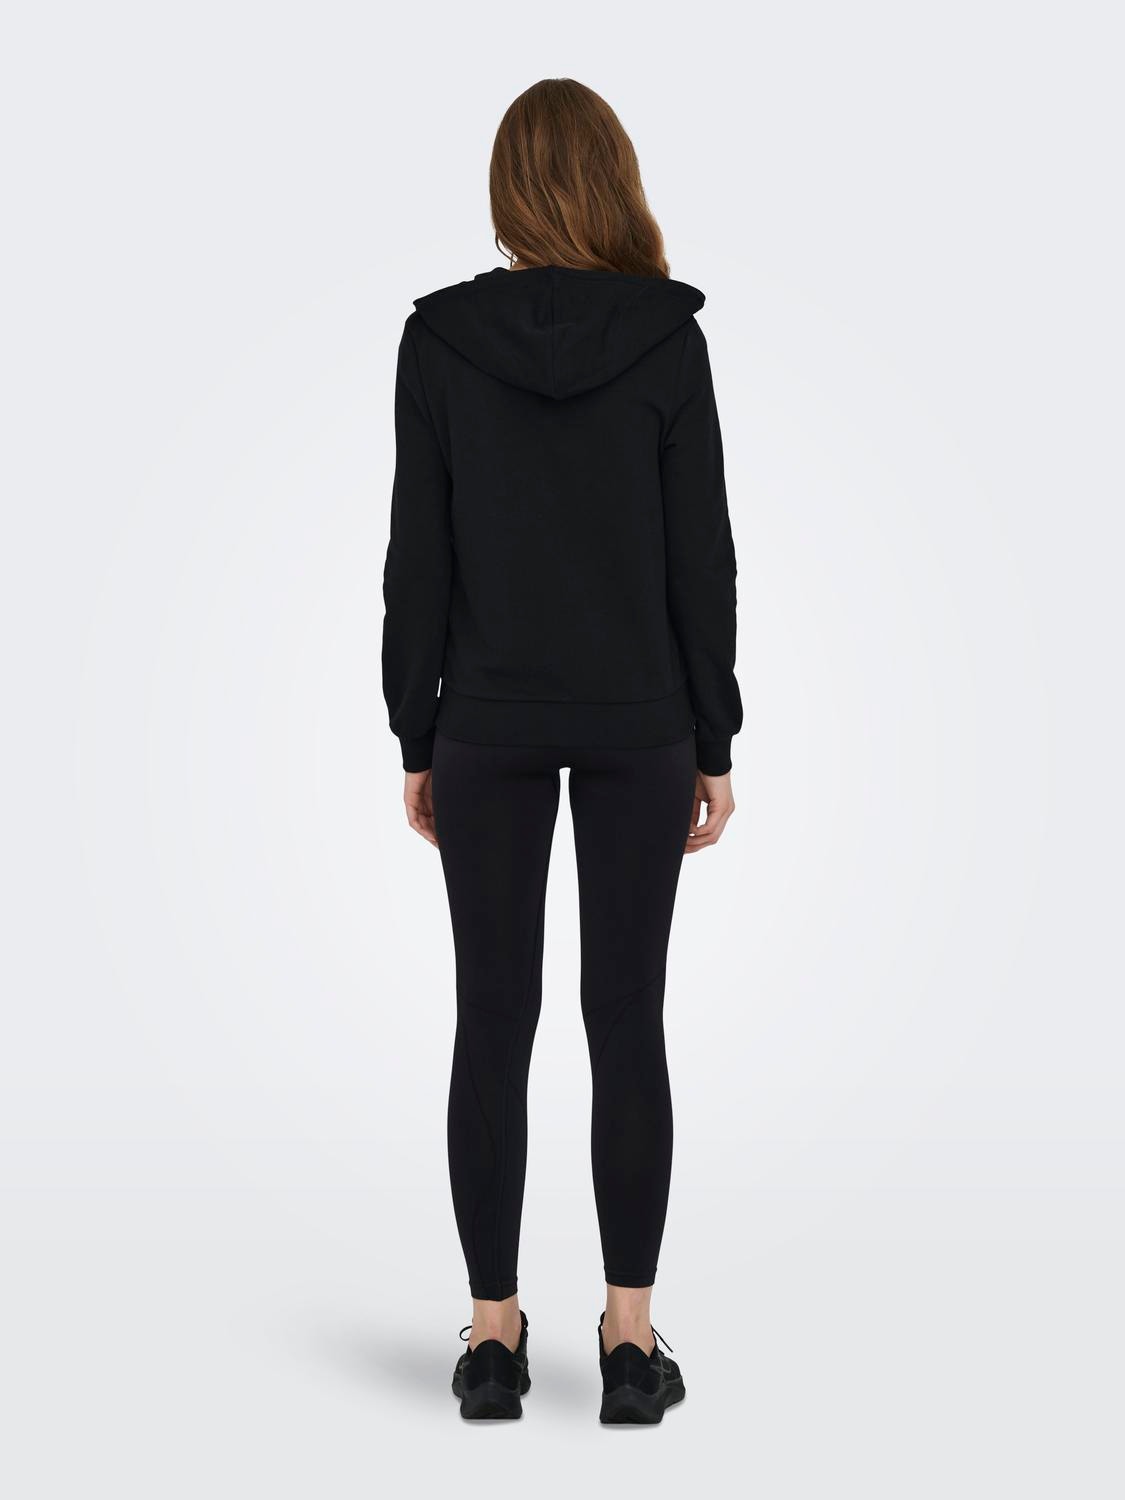 Women Black Zip Up Hoodie: Tall Wearever Full Zip Black Hoodie